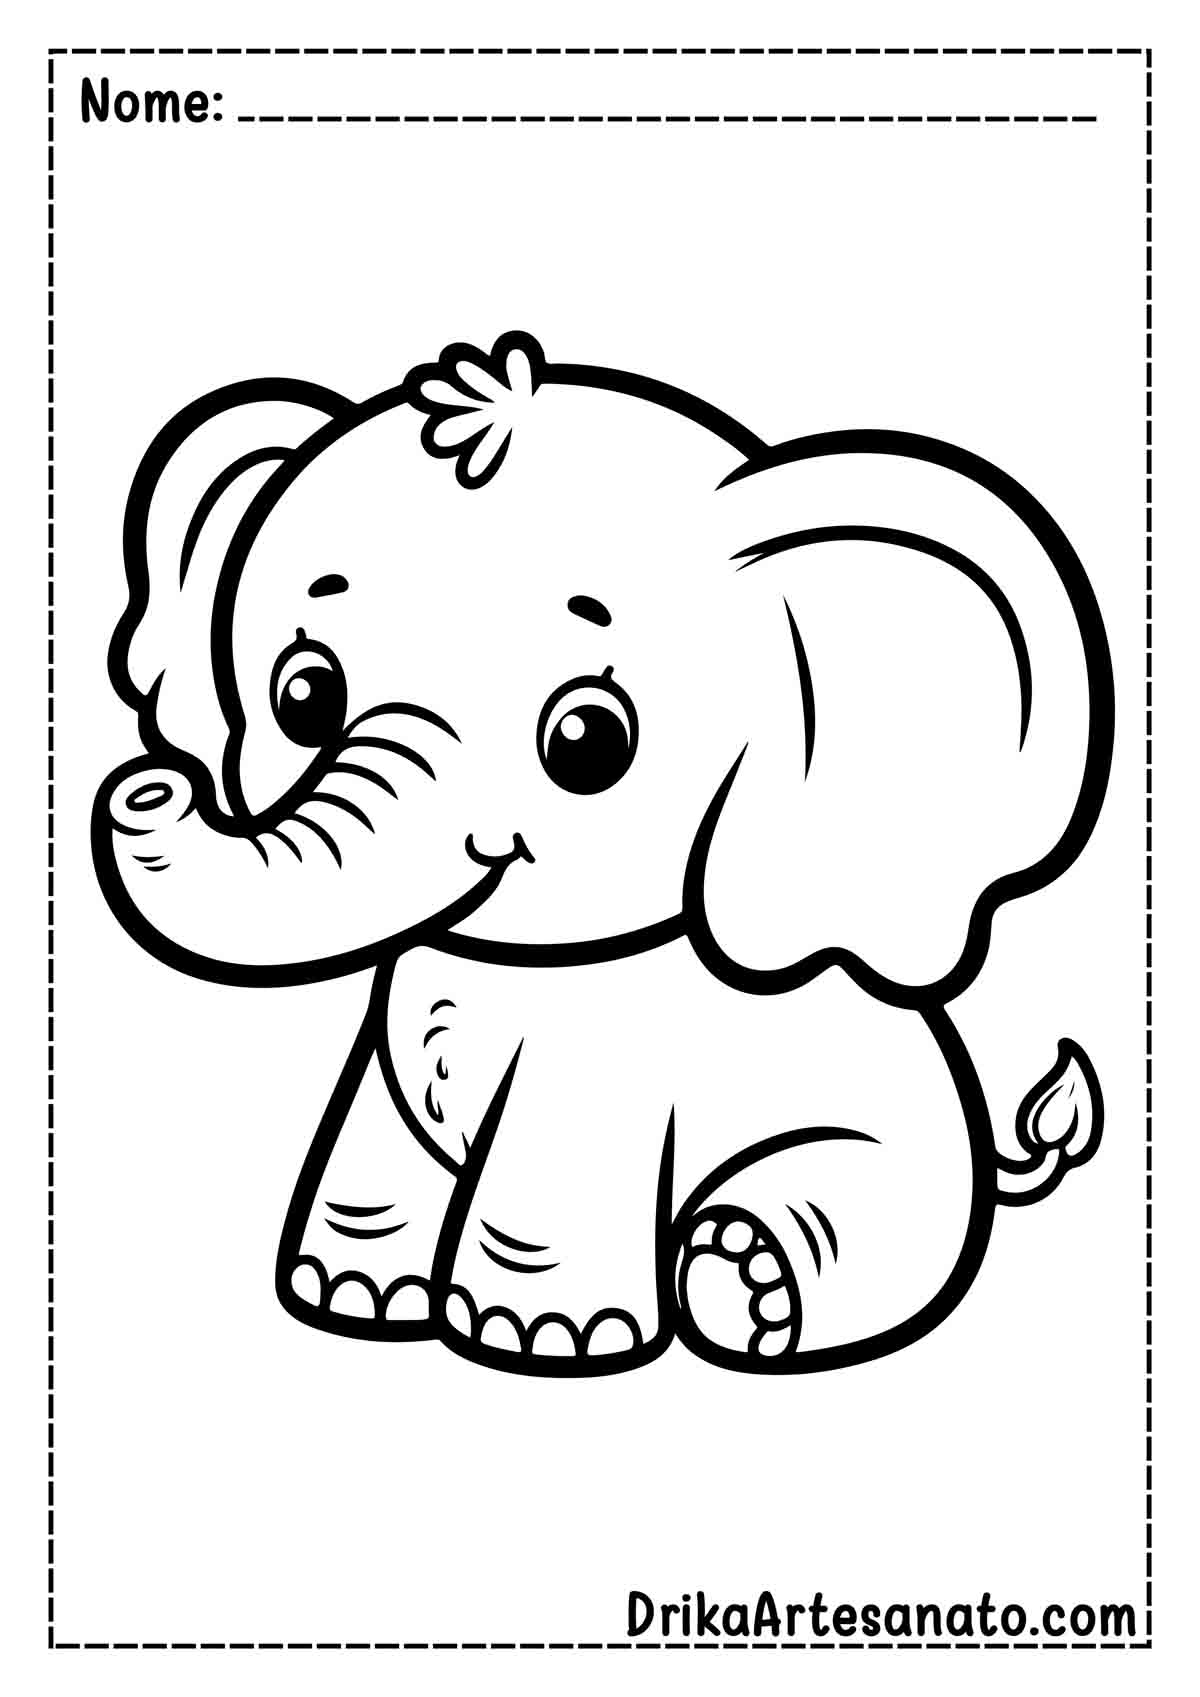 Desenho de Elefante Fácil para Colorir e Imprimir